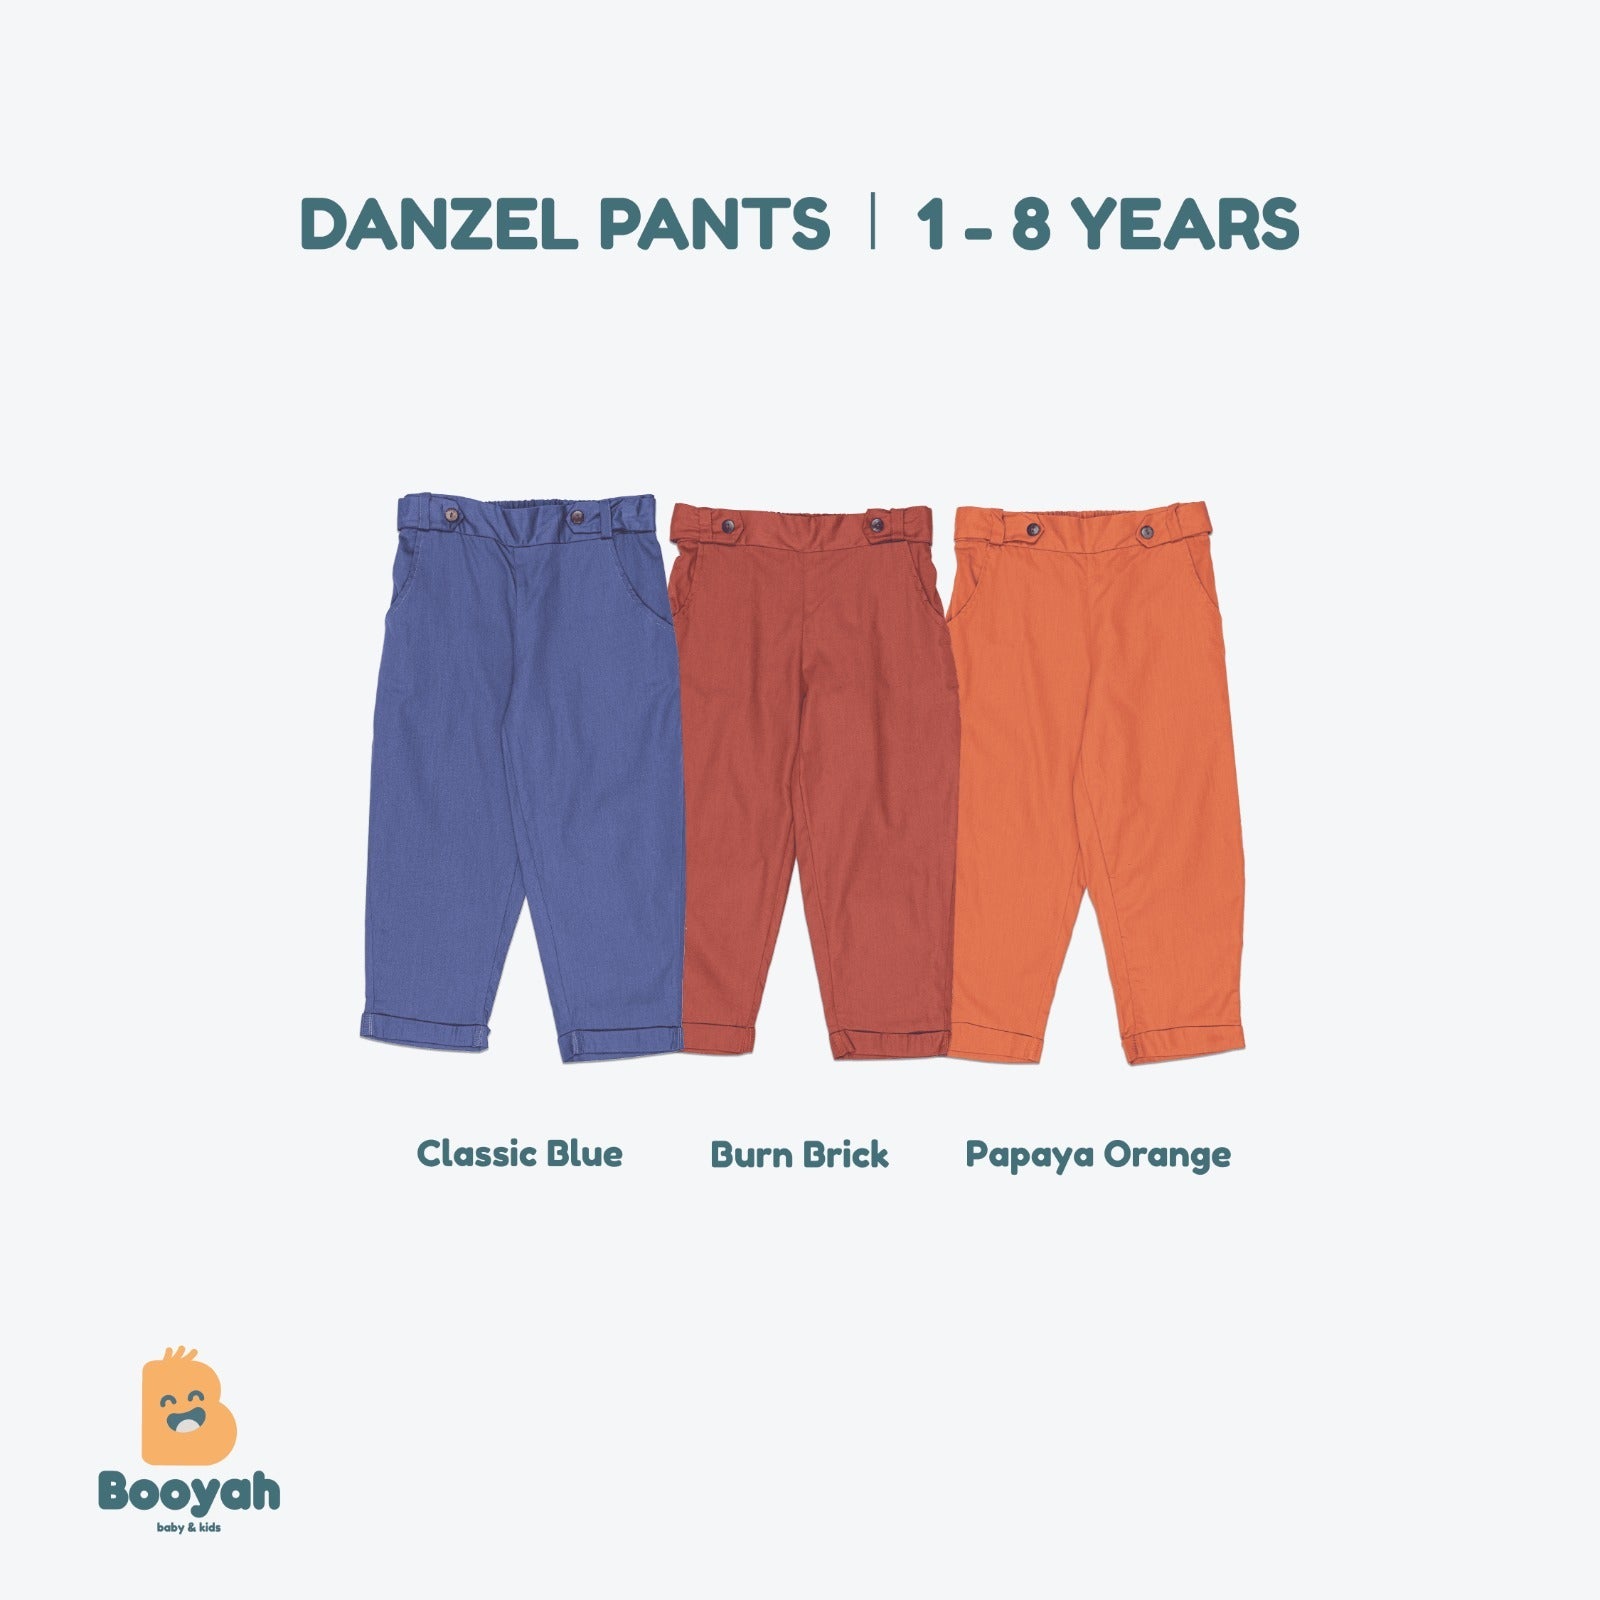 Booyah Baby & Kids Danzel Pants